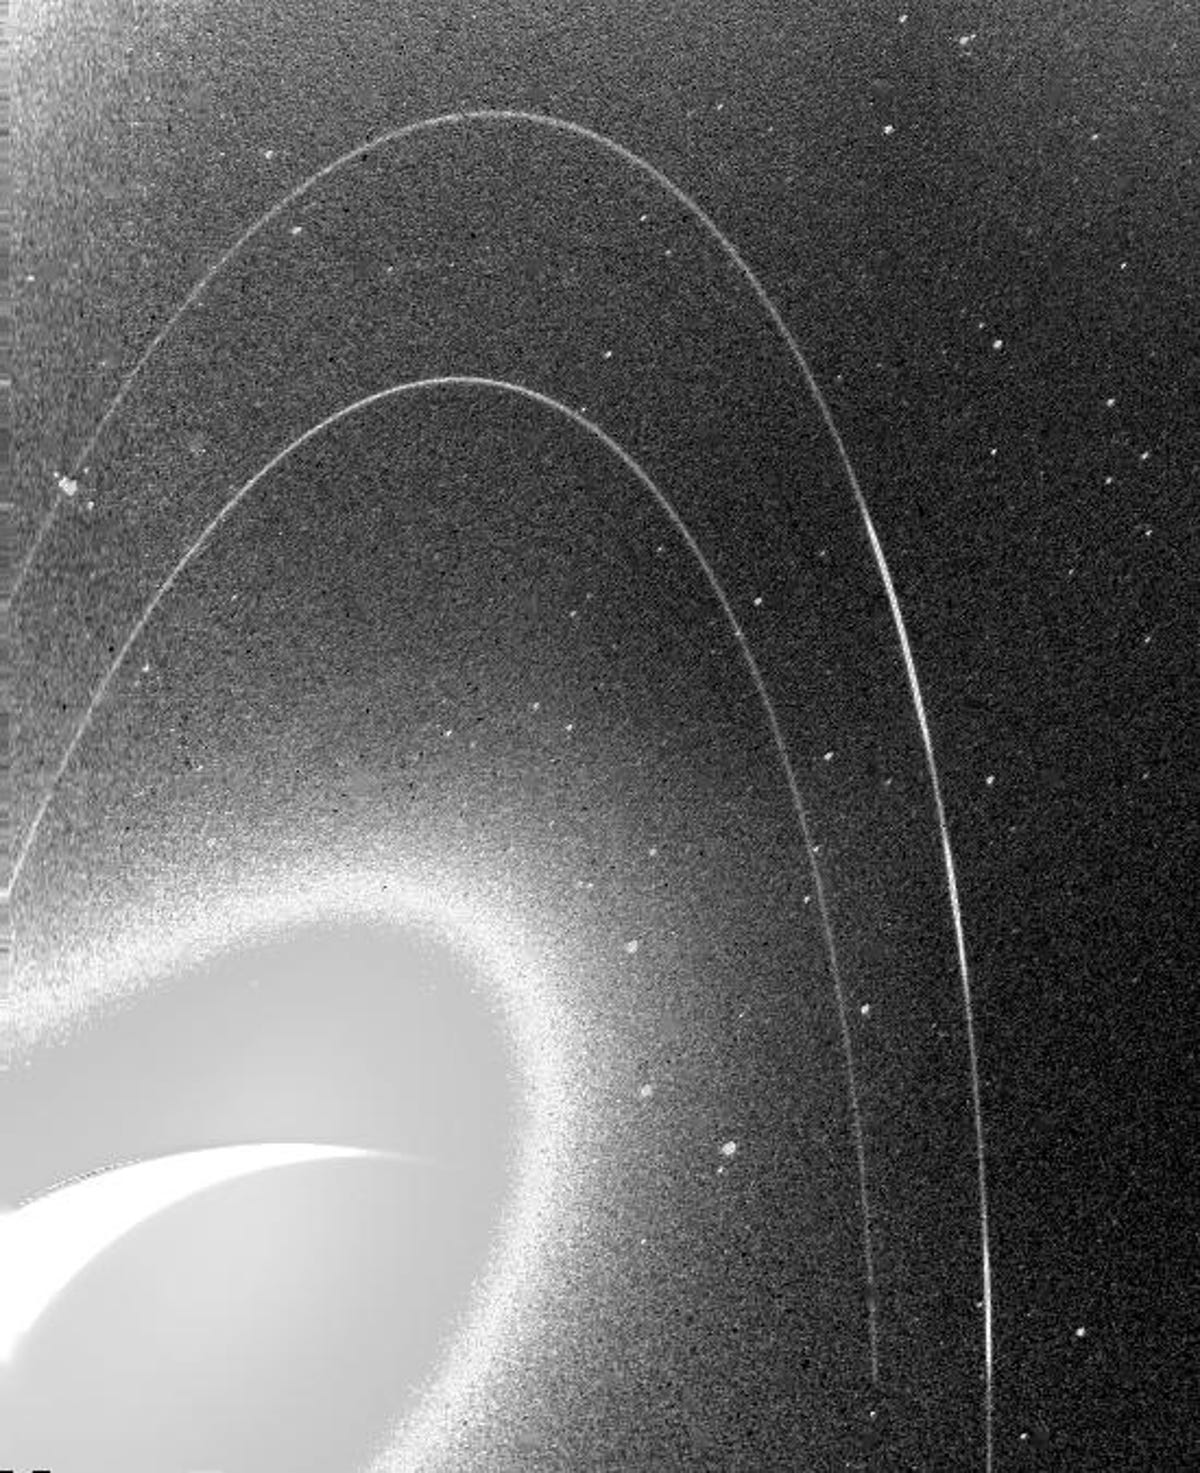 На зернистом черно-белом изображении видны слабые кольца Нептуна.